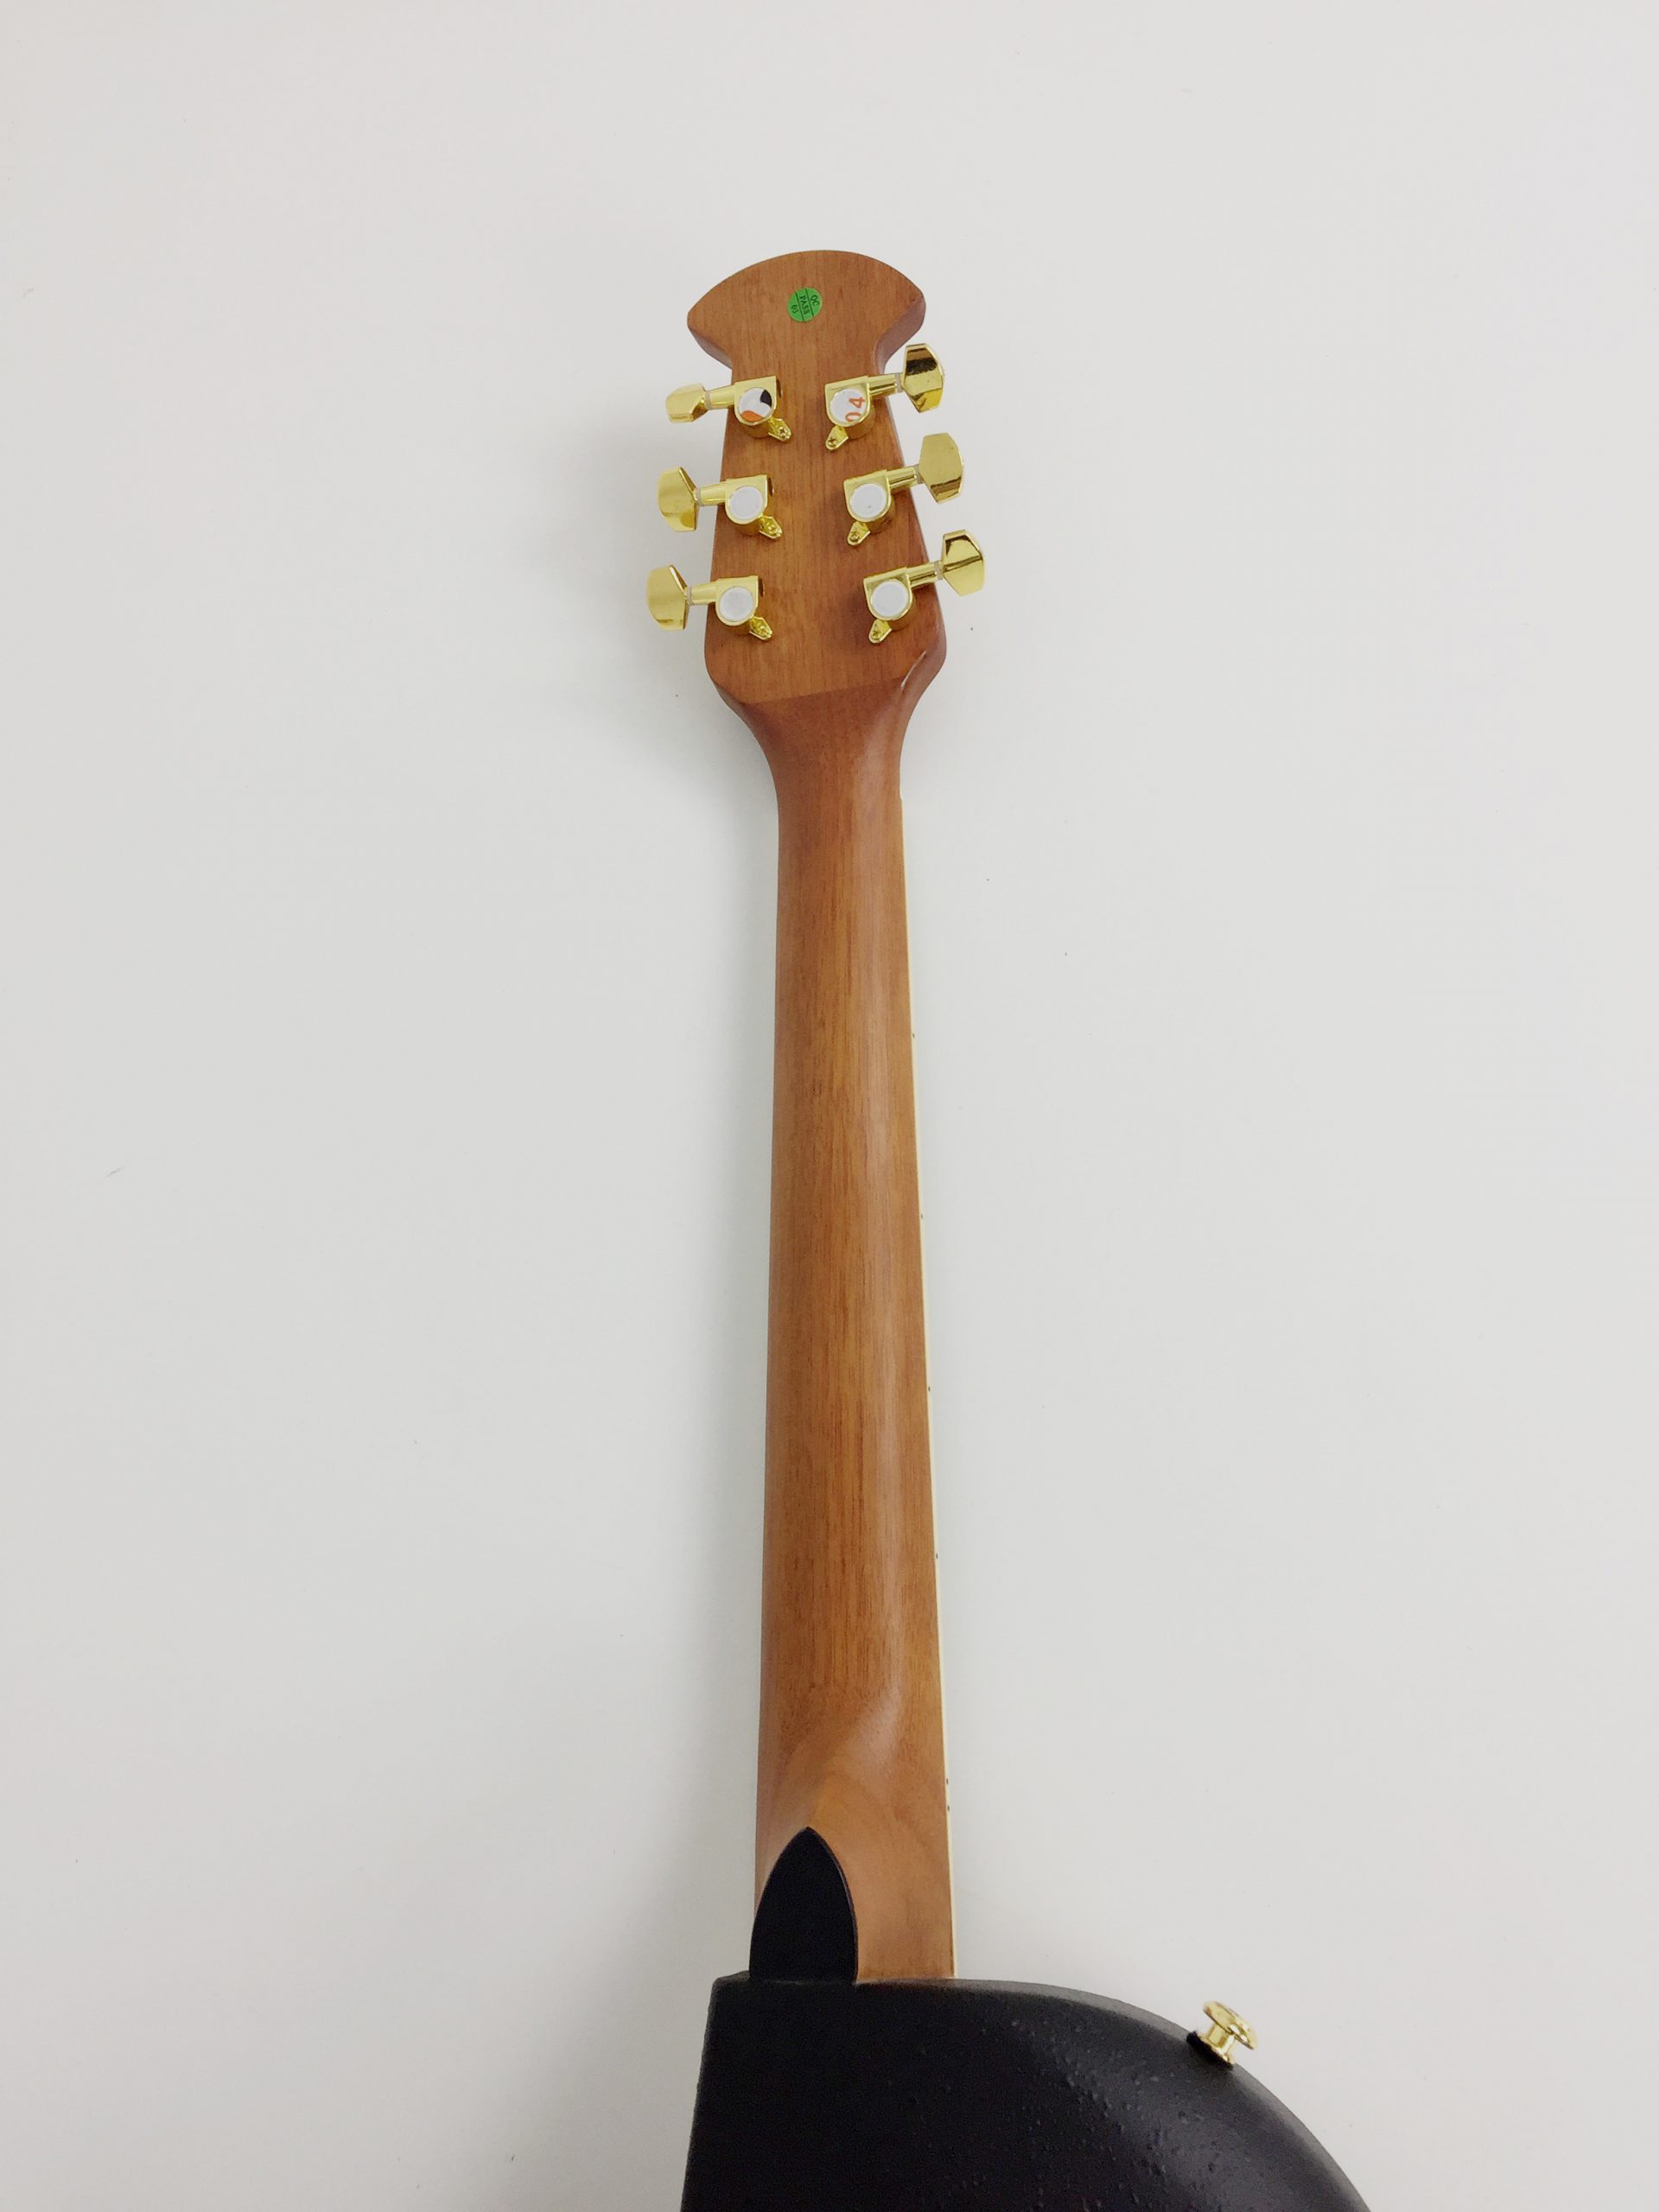 Caraya SP-723CEQ 'Oakleaf' Burled Honey Round-Back Guitar w/EQ +